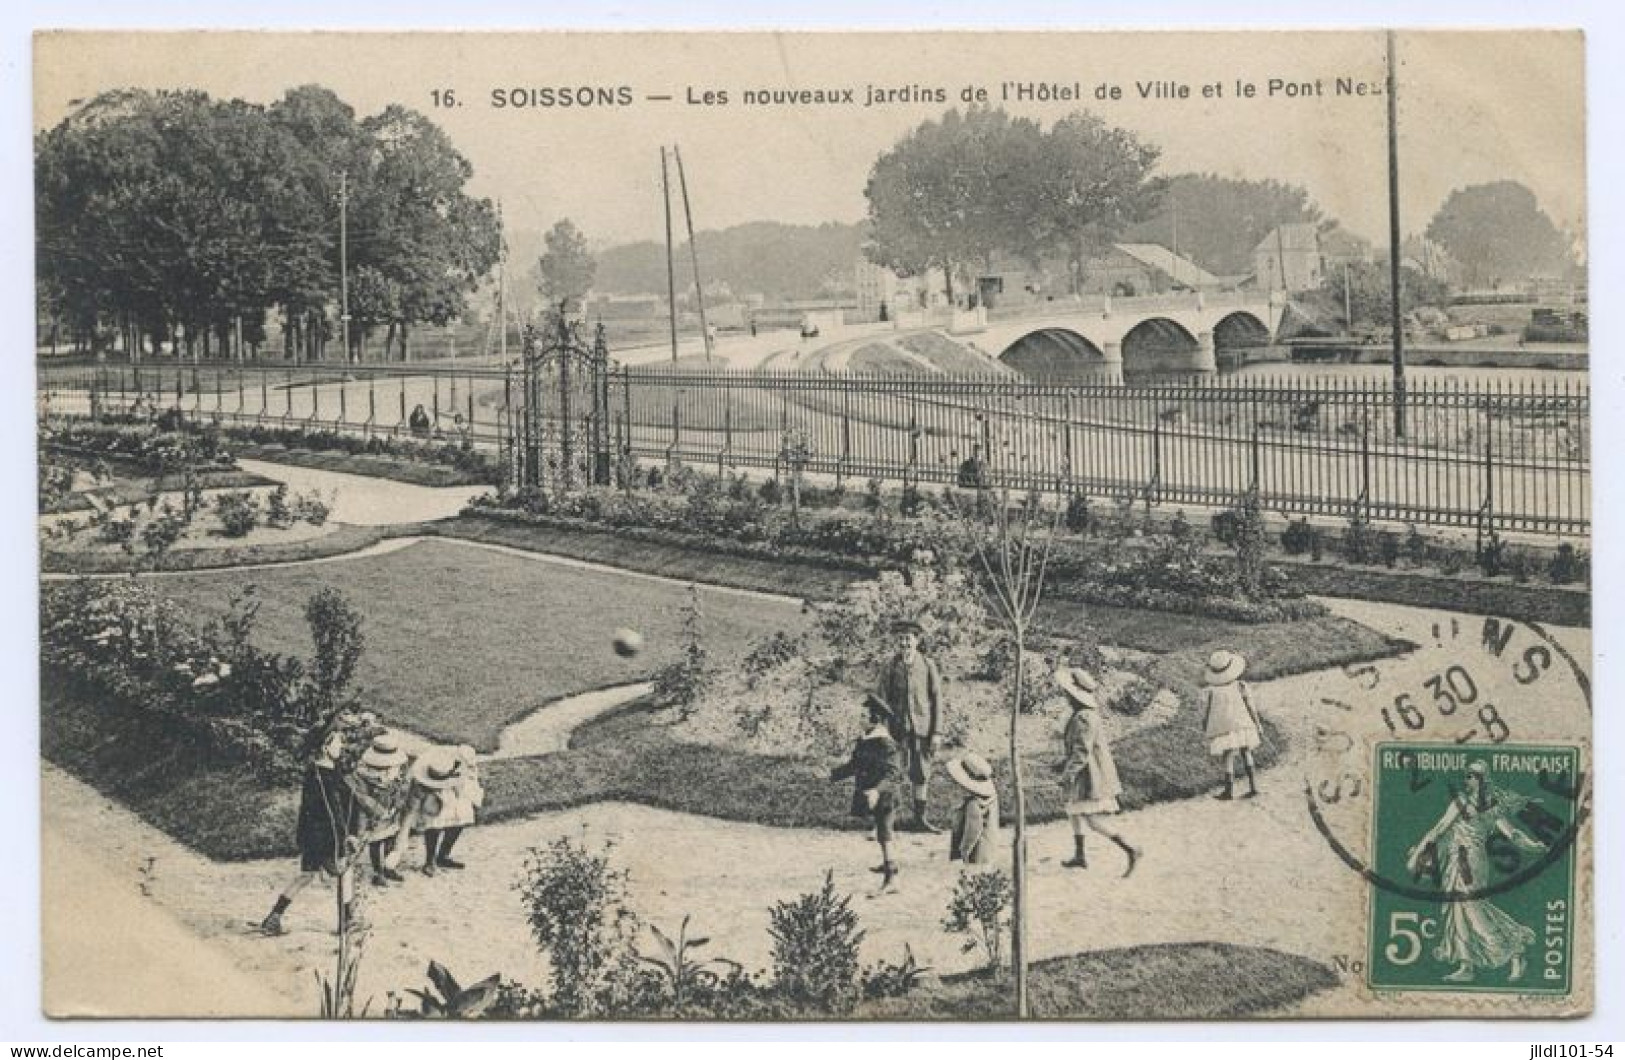 Soissons - lot 35 vues (lt 10)